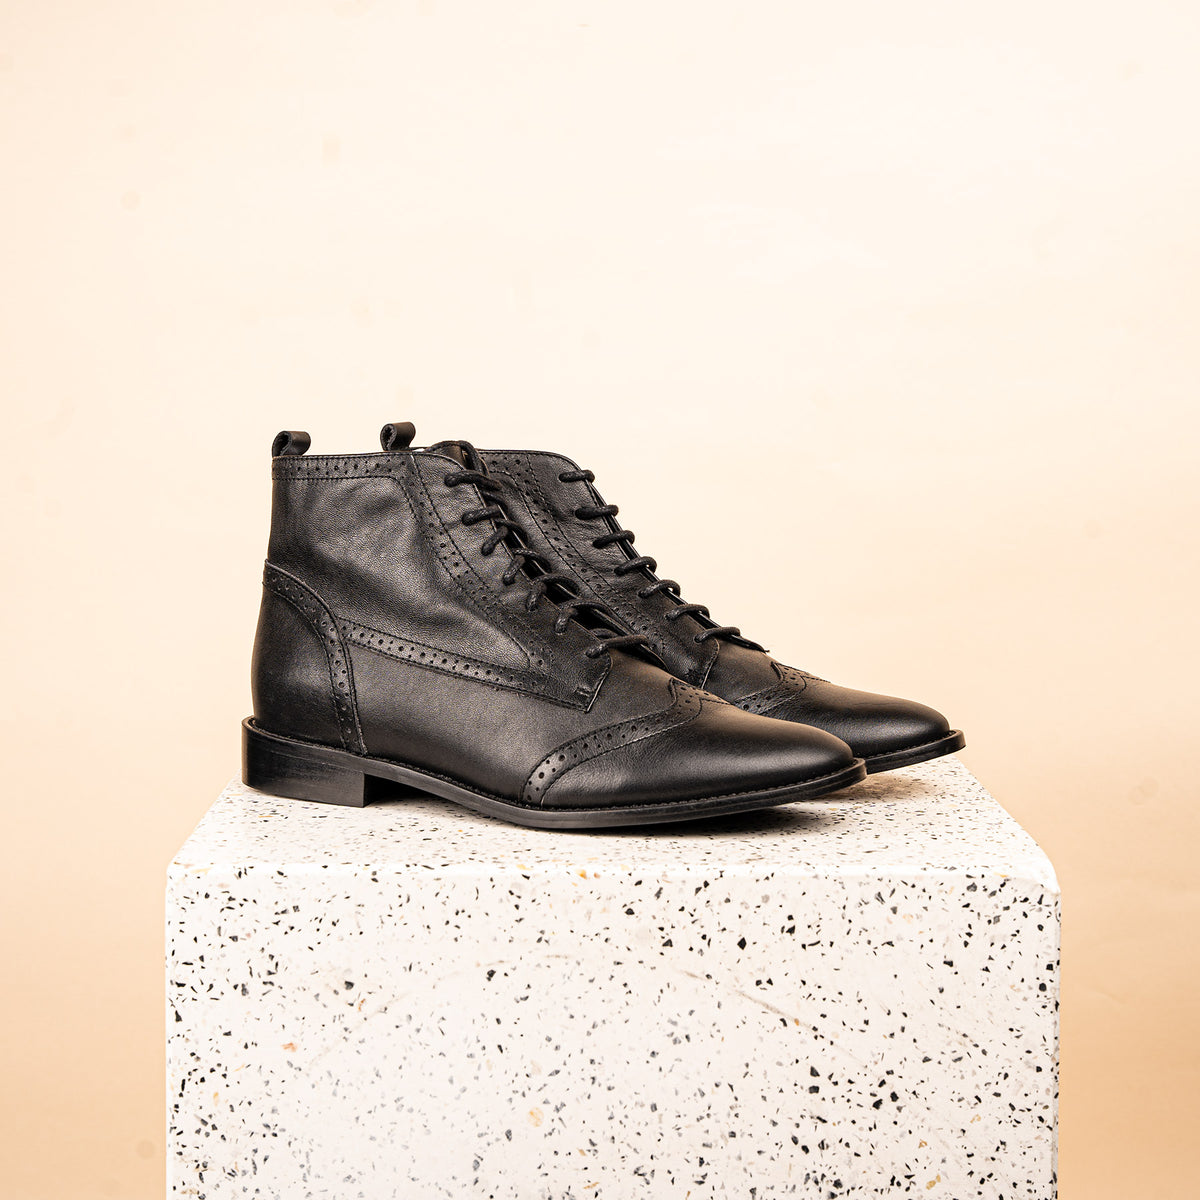 Arco - Black Leather SAMPLE SALE - FINAL SALE